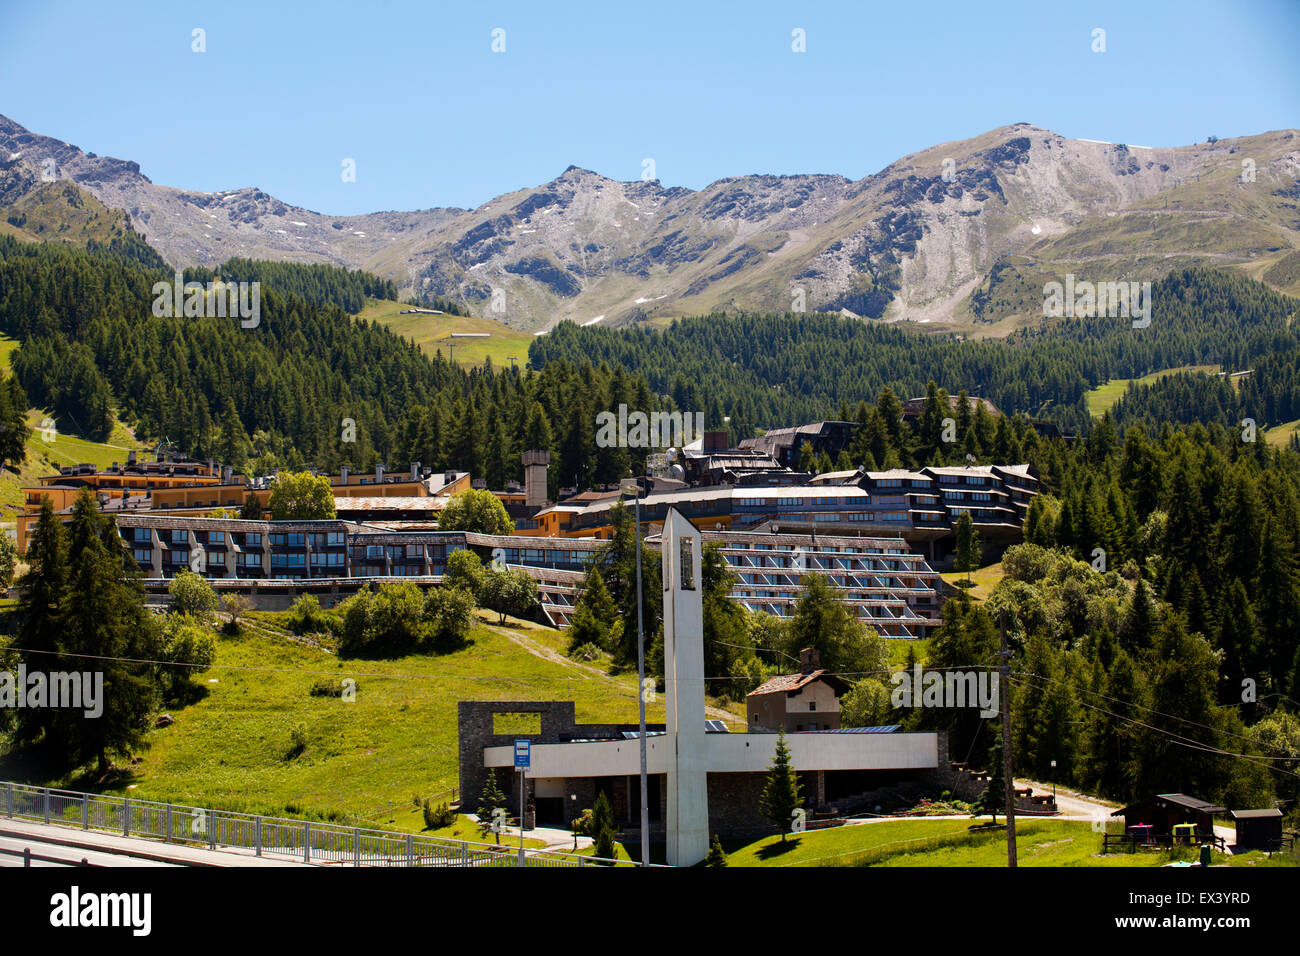 Villaggio Valtur di Pila, Aosta, Valle d'Aosta, Italia Foto stock - Alamy